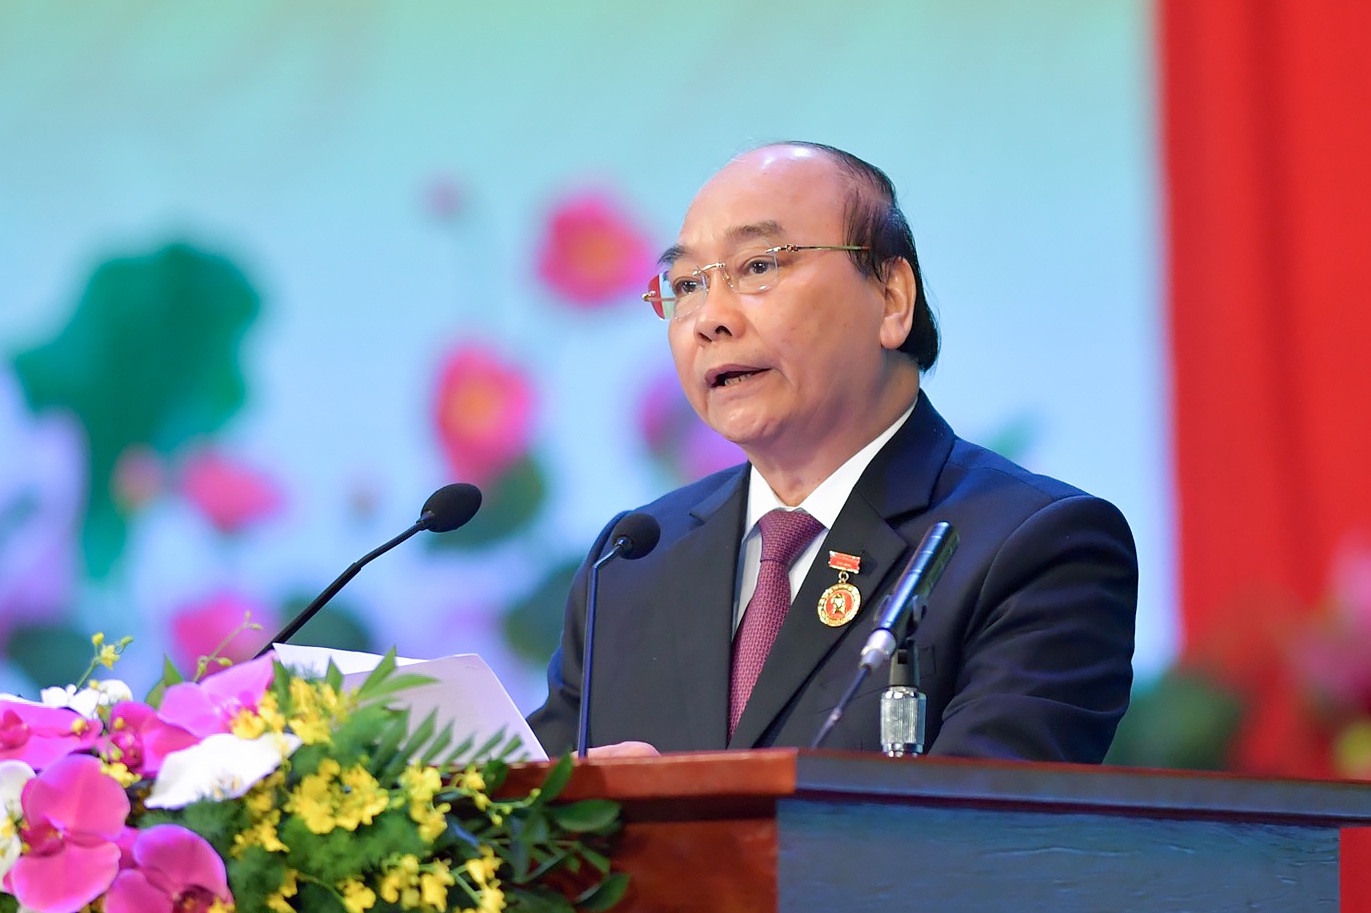 Thủ tướng Chính phủ Nguyễn Xuân Phúc - Chủ tịch Hội đồng Thi đua - Khen thưởng Trung ương đã phát động Phong trào thi đua trong cả nước giai đoạn 2021-2025 